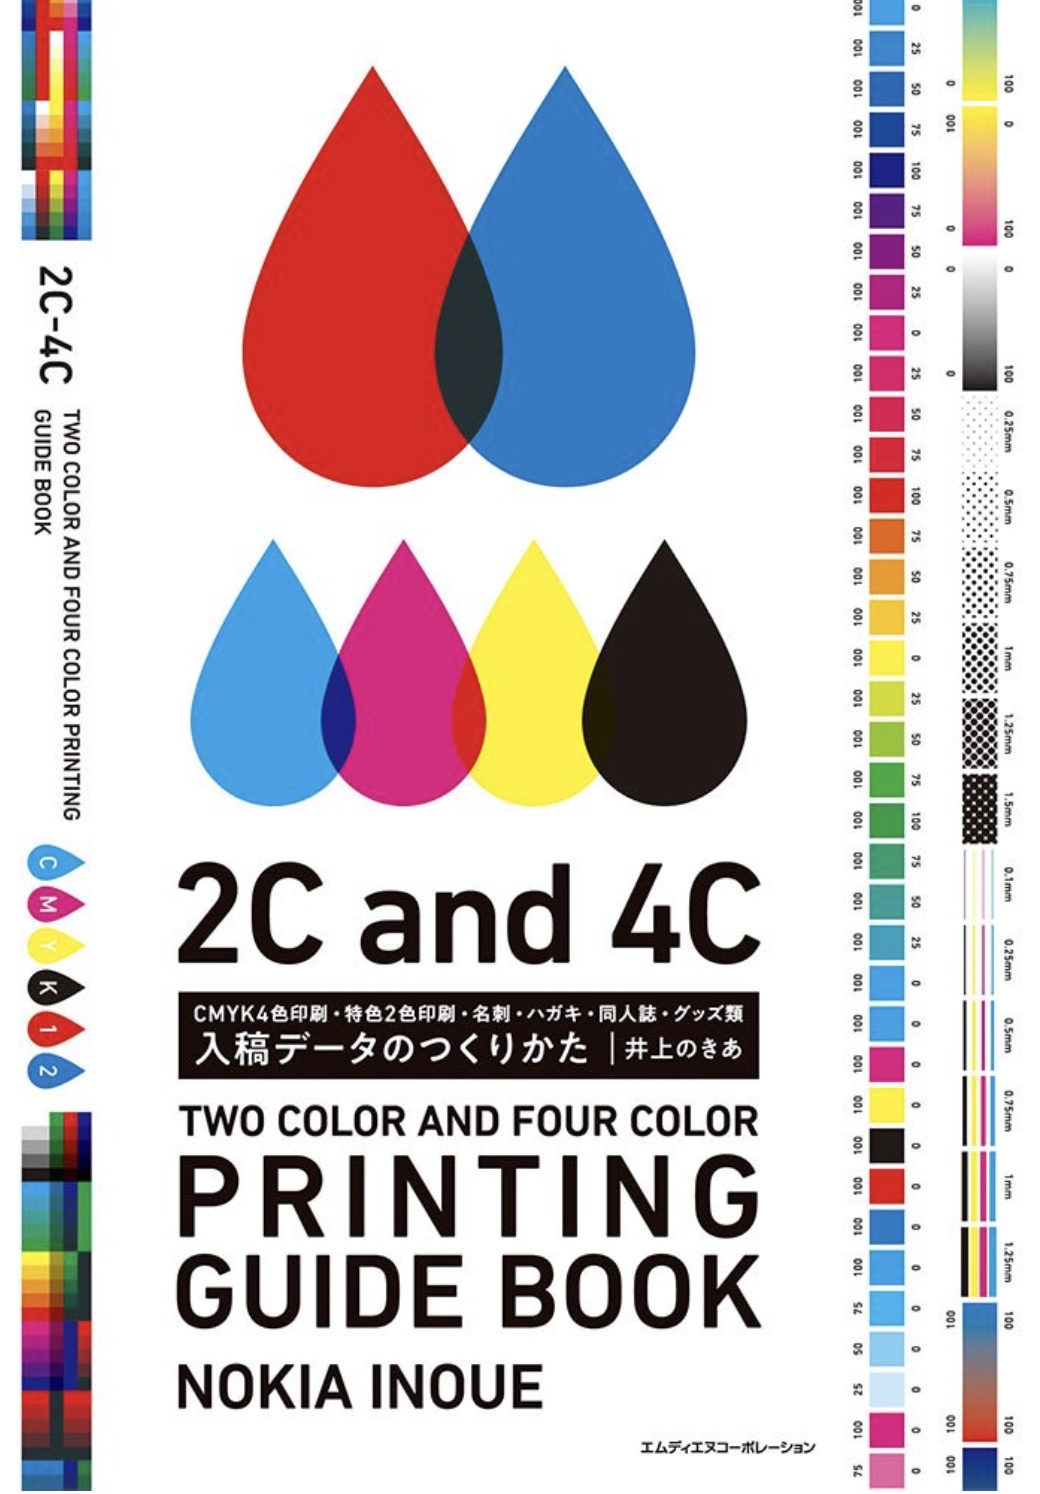 入稿データのつくりかた CMYK4色印刷・特色2色印刷・名刺・ハガキ・同人誌・グッズ類